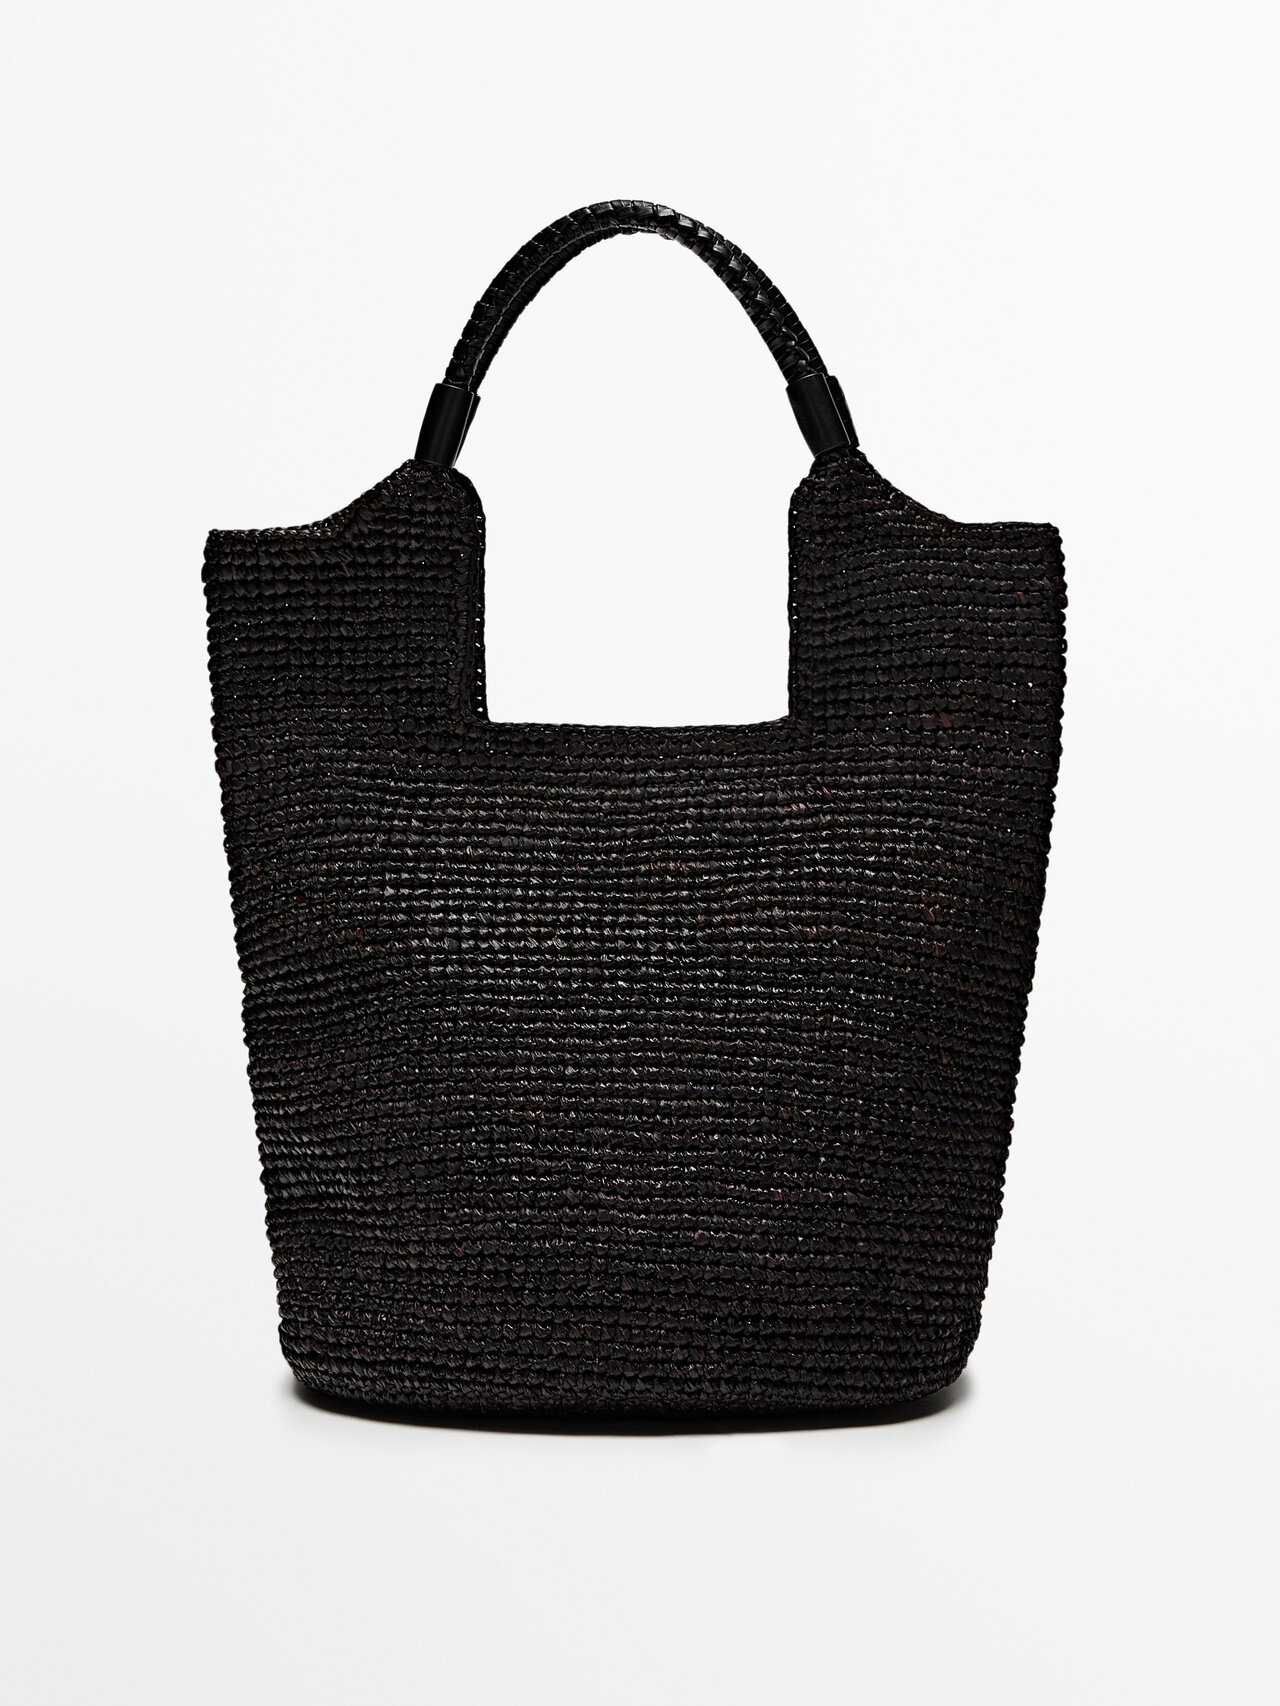 Massimo Dutti Raffia Tote Bag With Leather Strap In Black